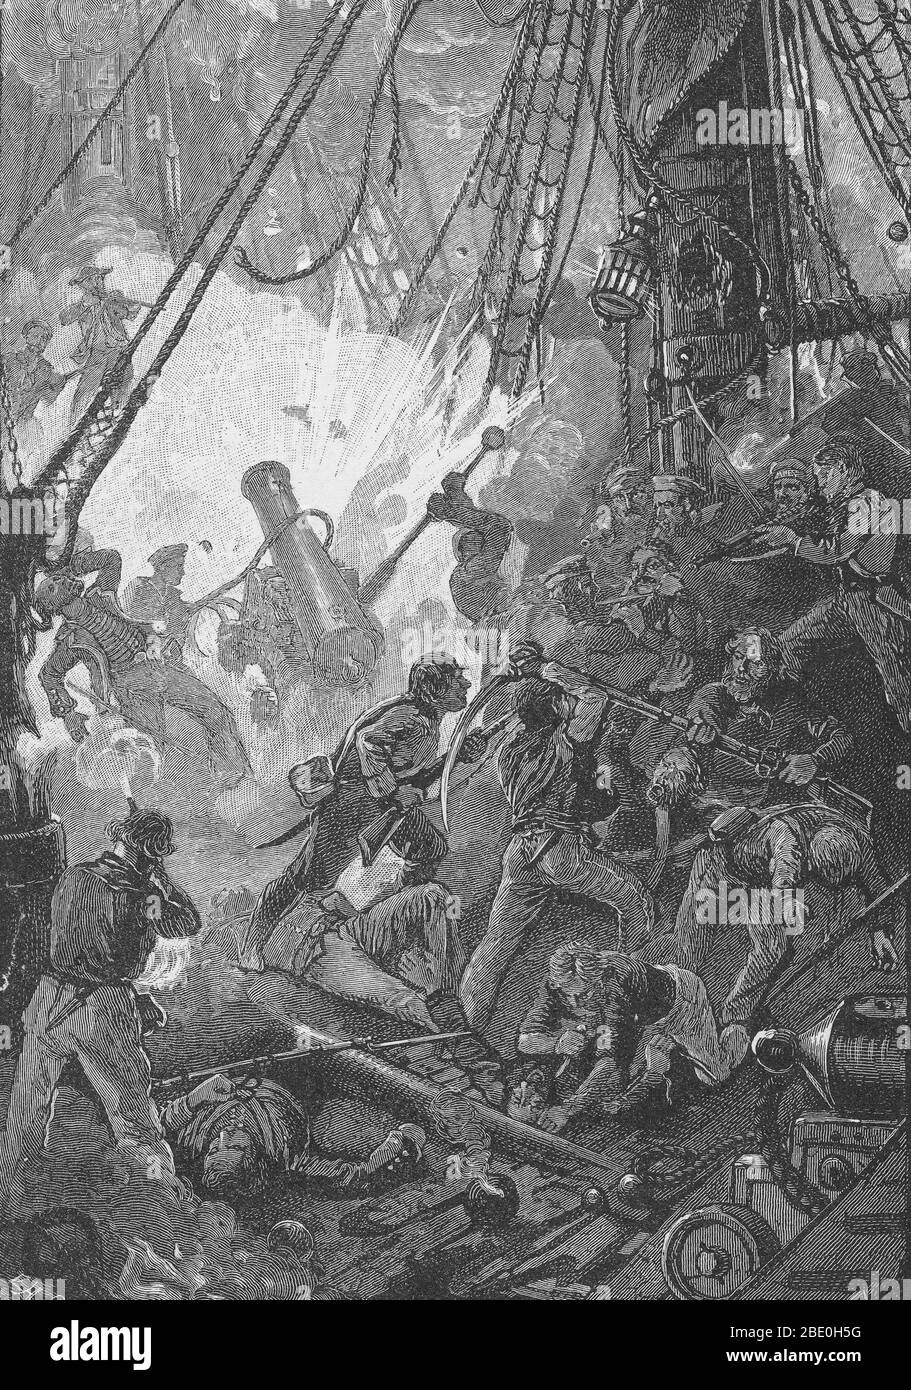 Gli equipaggi della USS Bonhomme Richard e della HMS Serapis lo combattono. La battaglia di Flamborough Head fu una battaglia navale che ebbe luogo il 23 settembre 1779, nel Mare del Nord al largo della costa dello Yorkshire, mettendo Richard Bonhomme di Jones contro la nave britannica Serapis. Utilizzando la sua maggiore manovrabilità e le pistole più pesanti, i Serapis si arrapparono e suonarono il Bonhomme Richard. Jones ha contrastato con il ramping i Serapis e facendo il suo equipaggio legare le navi insieme con ganci di applaudire. Le navi continuarono a sparare l'una contro l'altra, mentre i marines di entrambe le parti si sniparono contro l'equipaggio e gli ufficiali opposti. Un tentativo americano Foto Stock